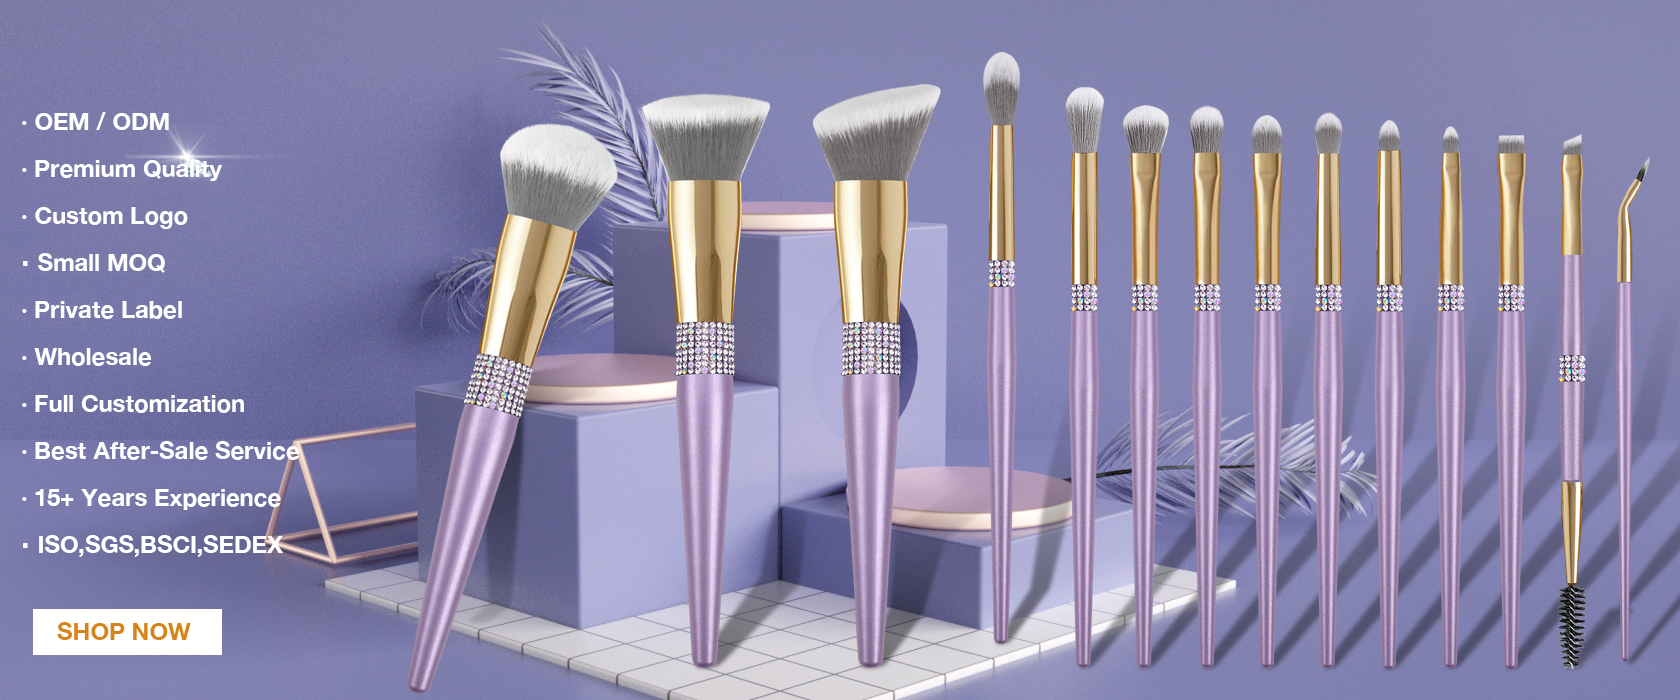 I-Makeup Brush Factory